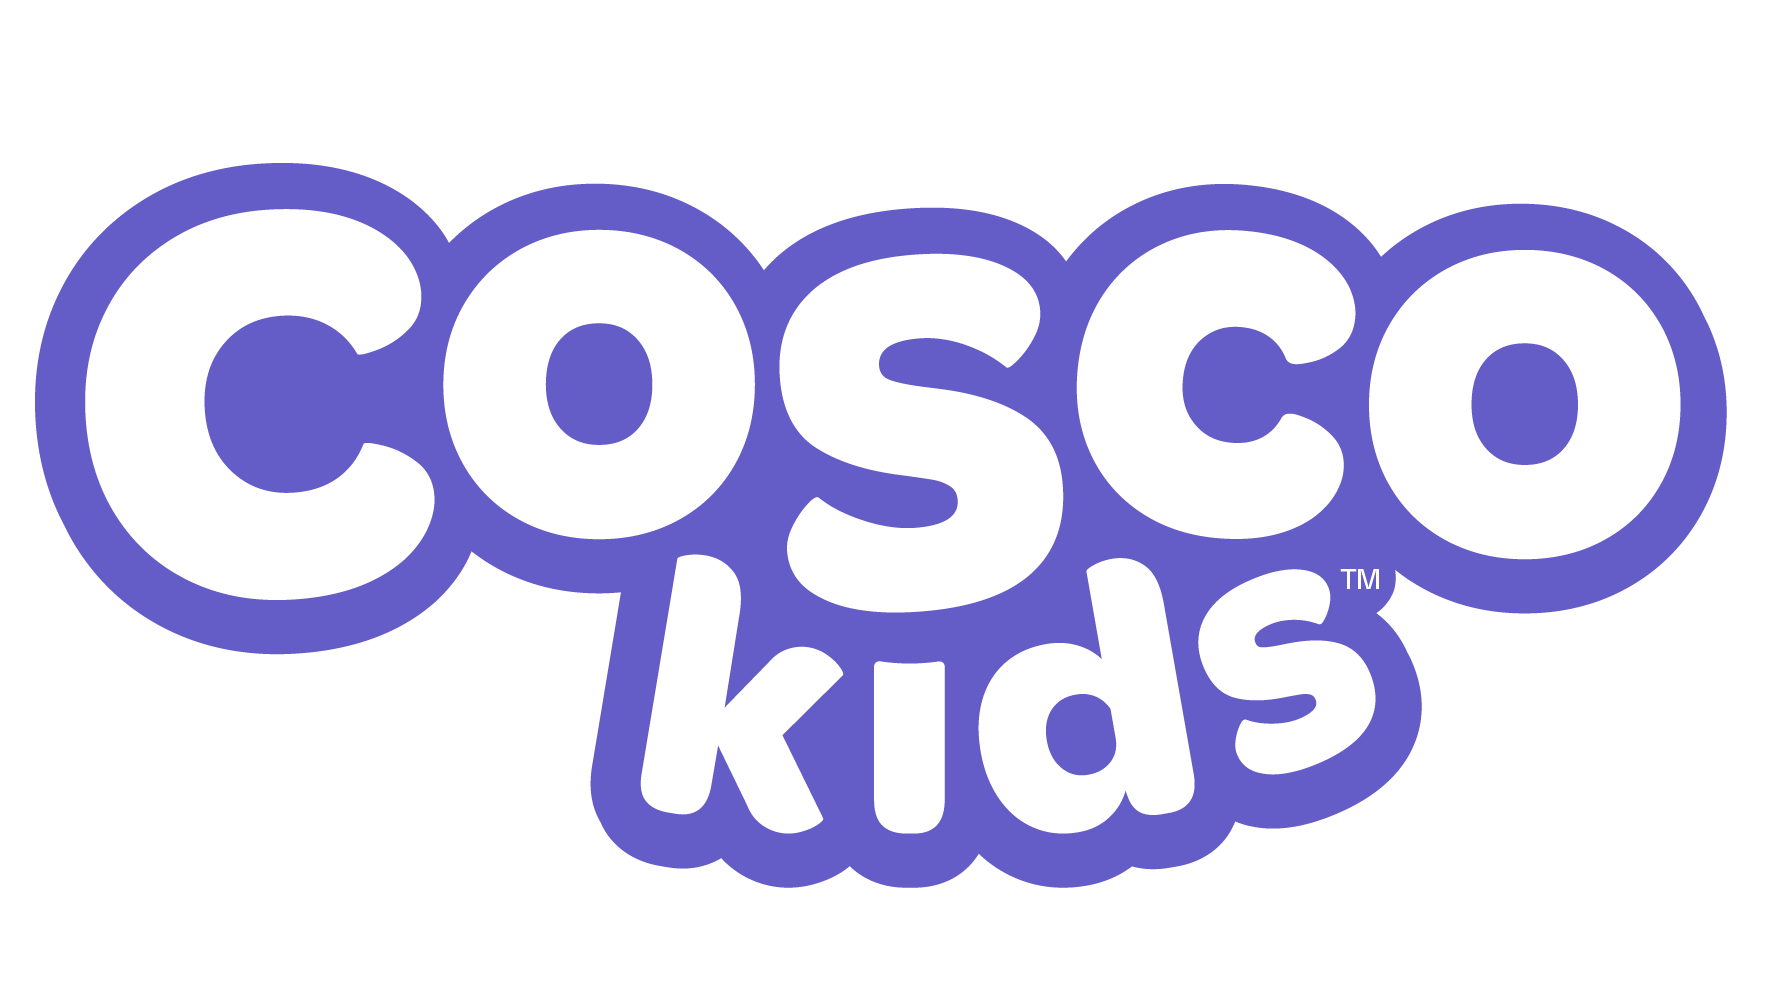 Cosco rebrand 2023